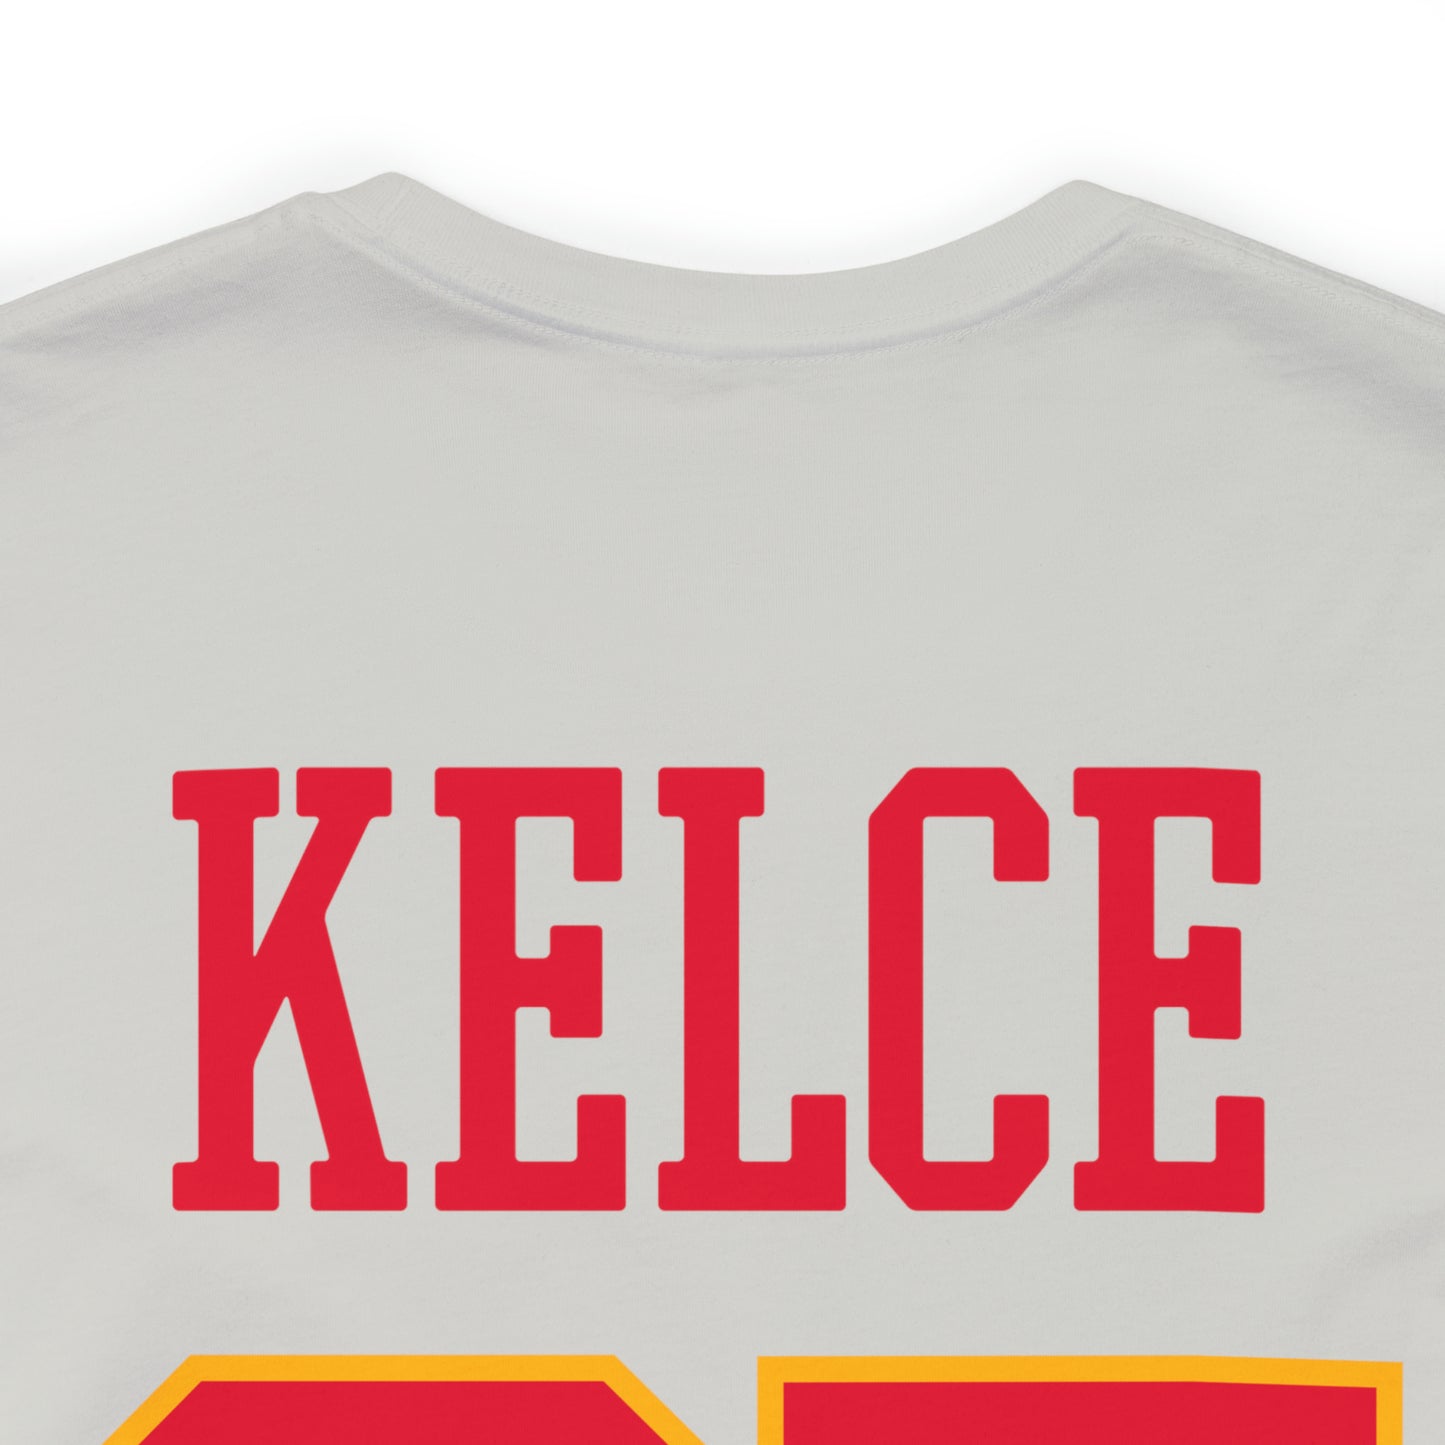 Travis Kelce Chiefs Era T-Shirt